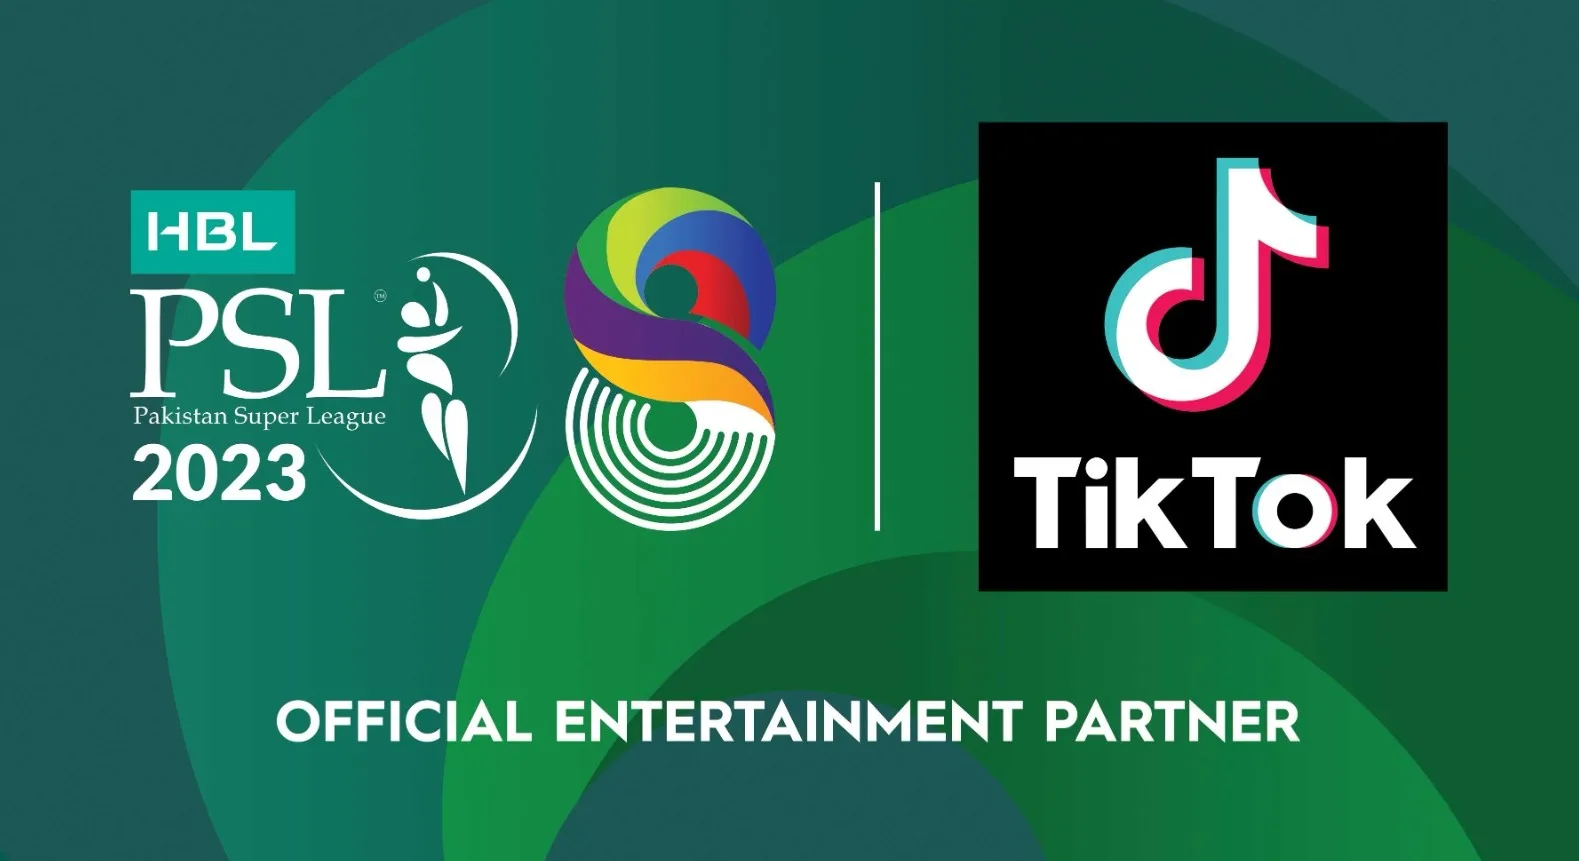 TikTok returns as Official Entertainment Partner for HBL PSL 8